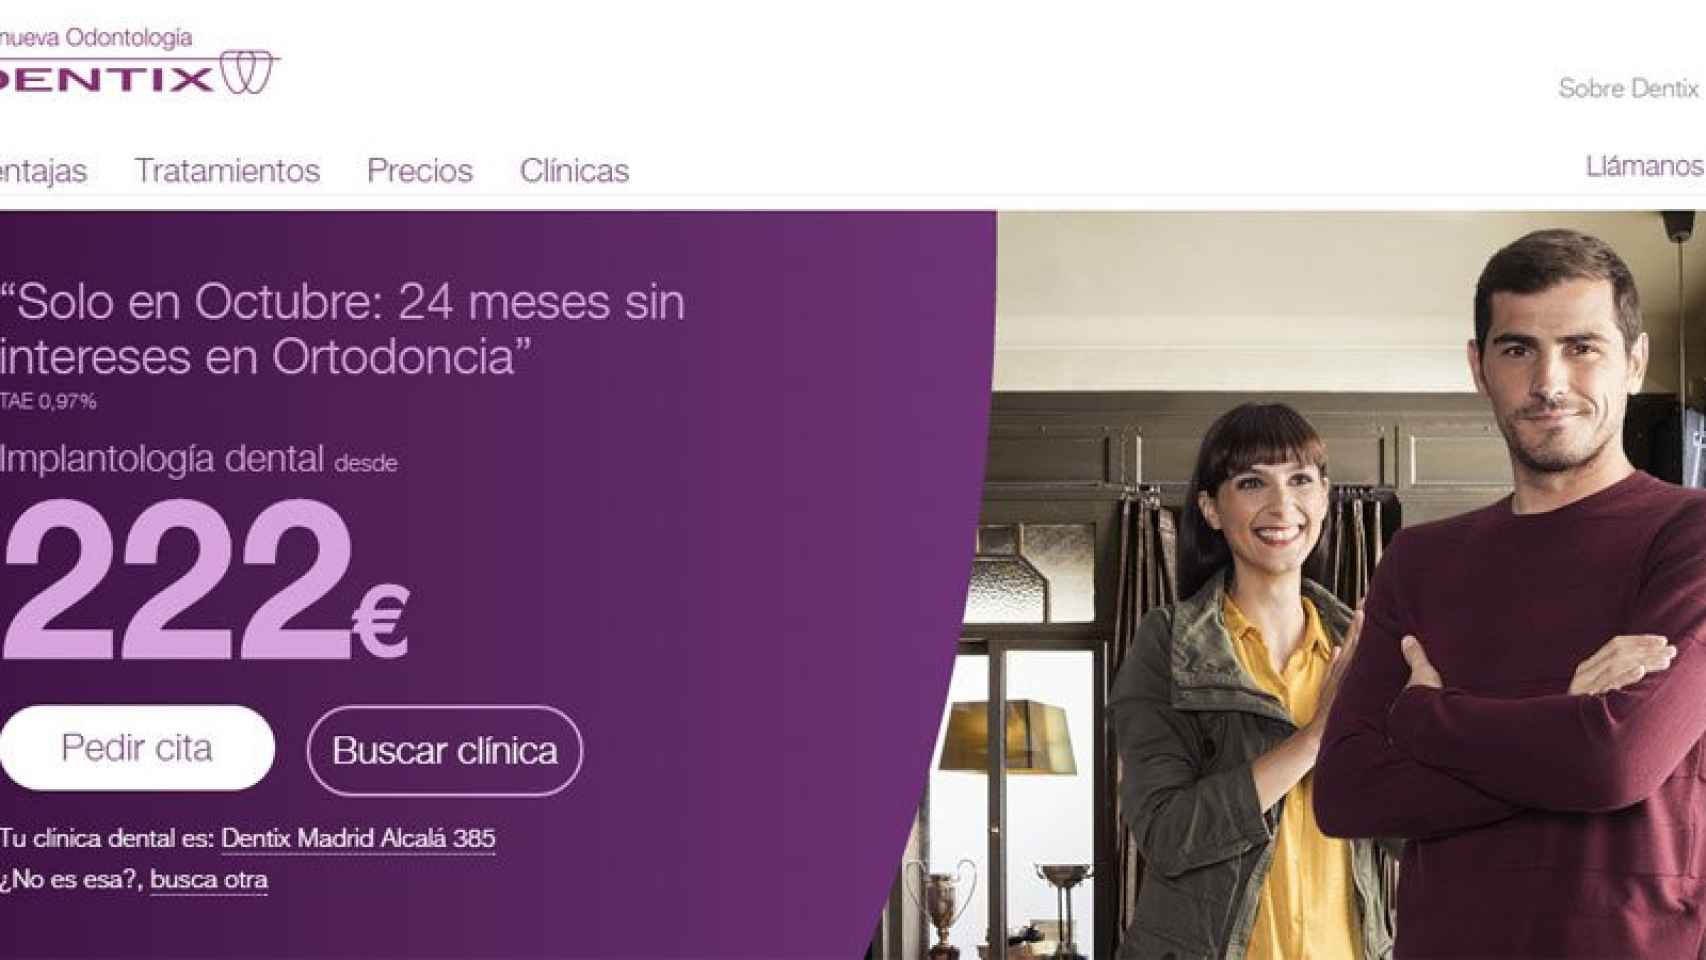 Iker Casillas en el anuncio de la clínica dental 'low cost', Dentix